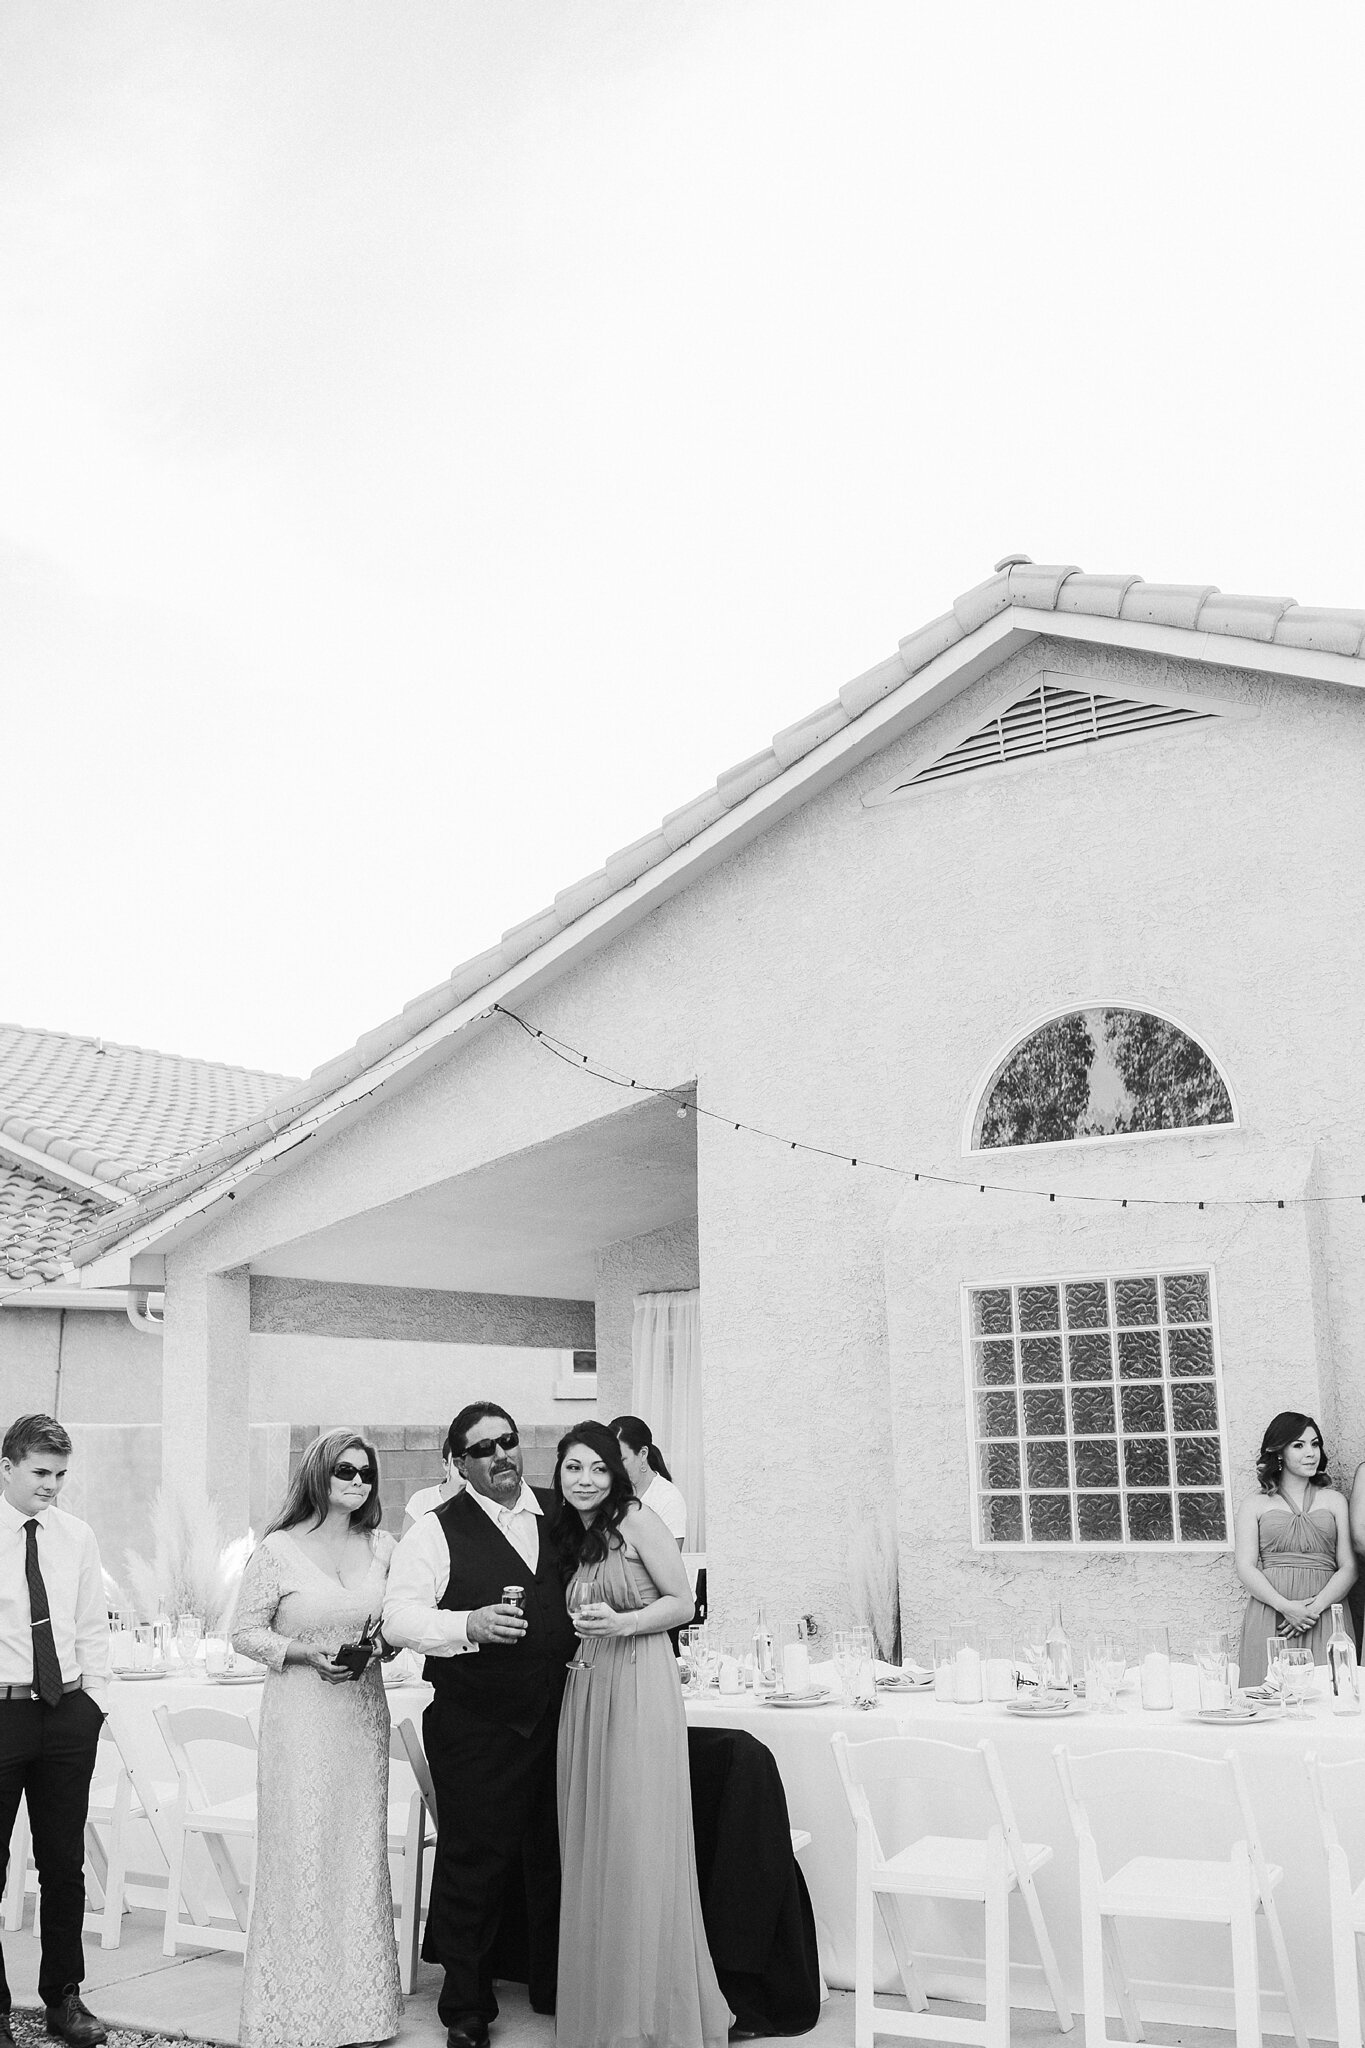 Alicia+lucia+photography+-+albuquerque+wedding+photographer+-+santa+fe+wedding+photography+-+new+mexico+wedding+photographer+-+new+mexico+wedding+-+intimate+wedding+-+intimate+new+mexico+wedding+-+backyard+wedding_0068.jpg